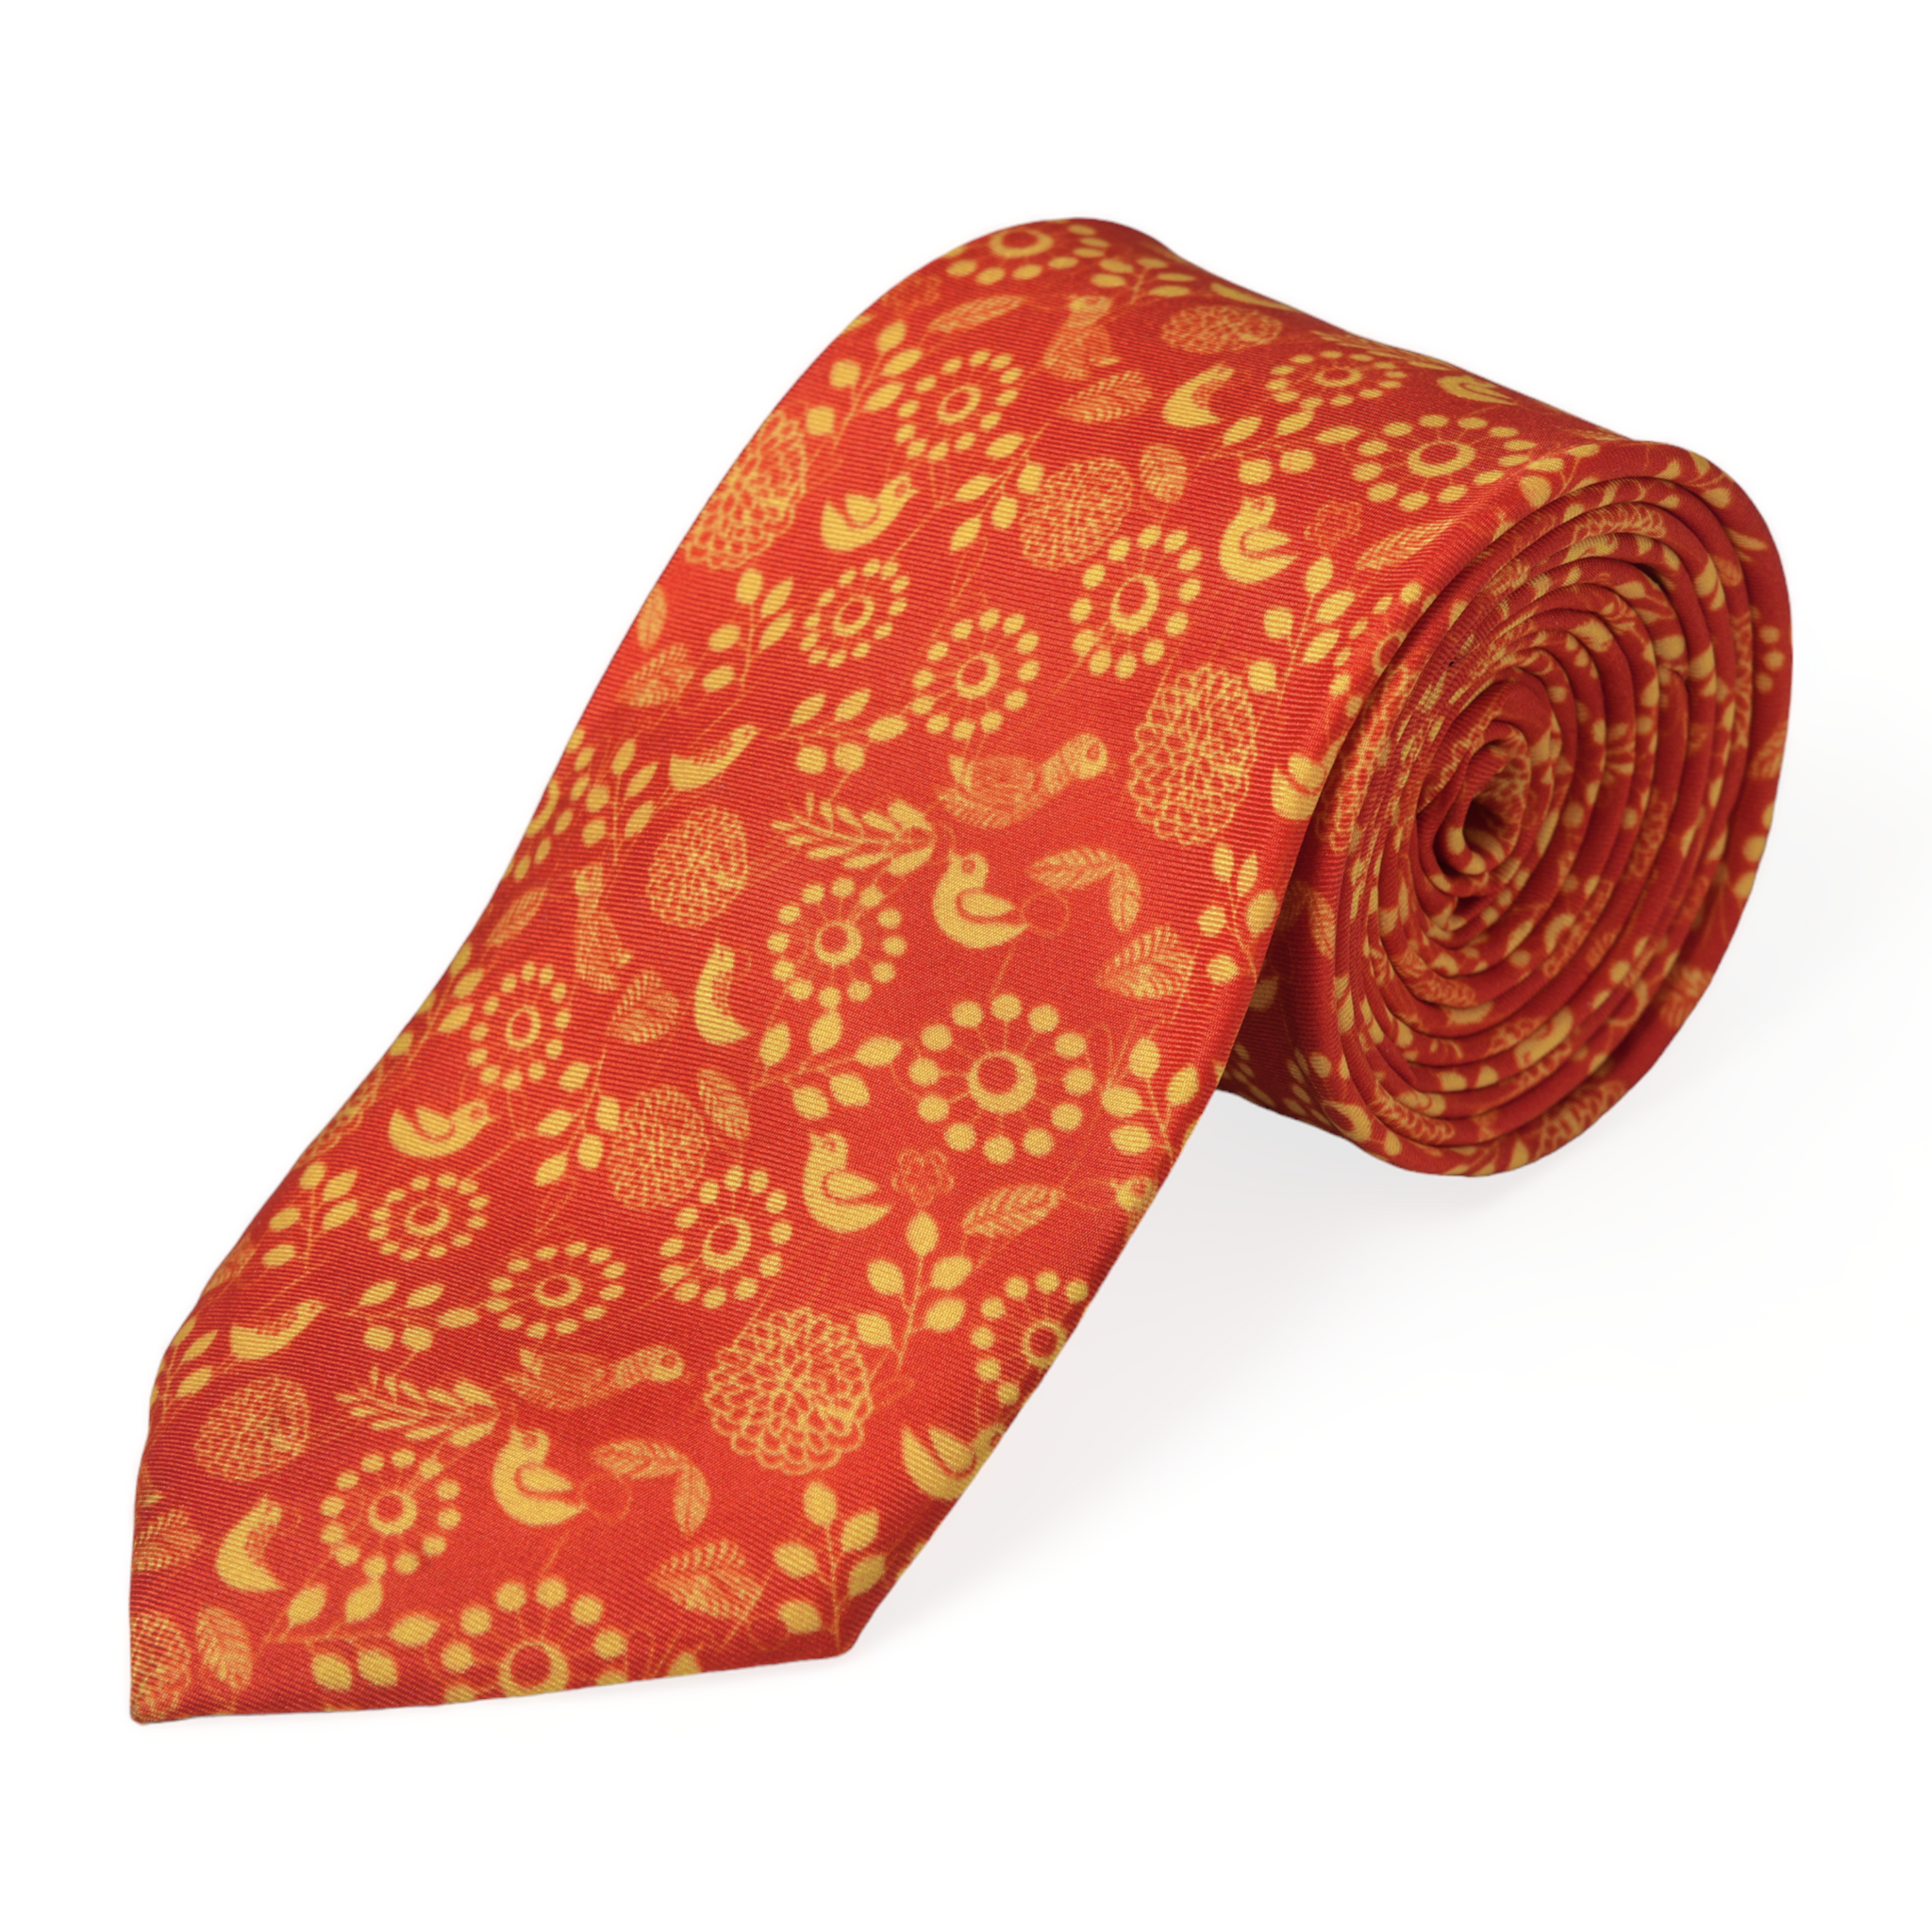 Chokore Orange & Red Silk Tie - Indian at Heart line